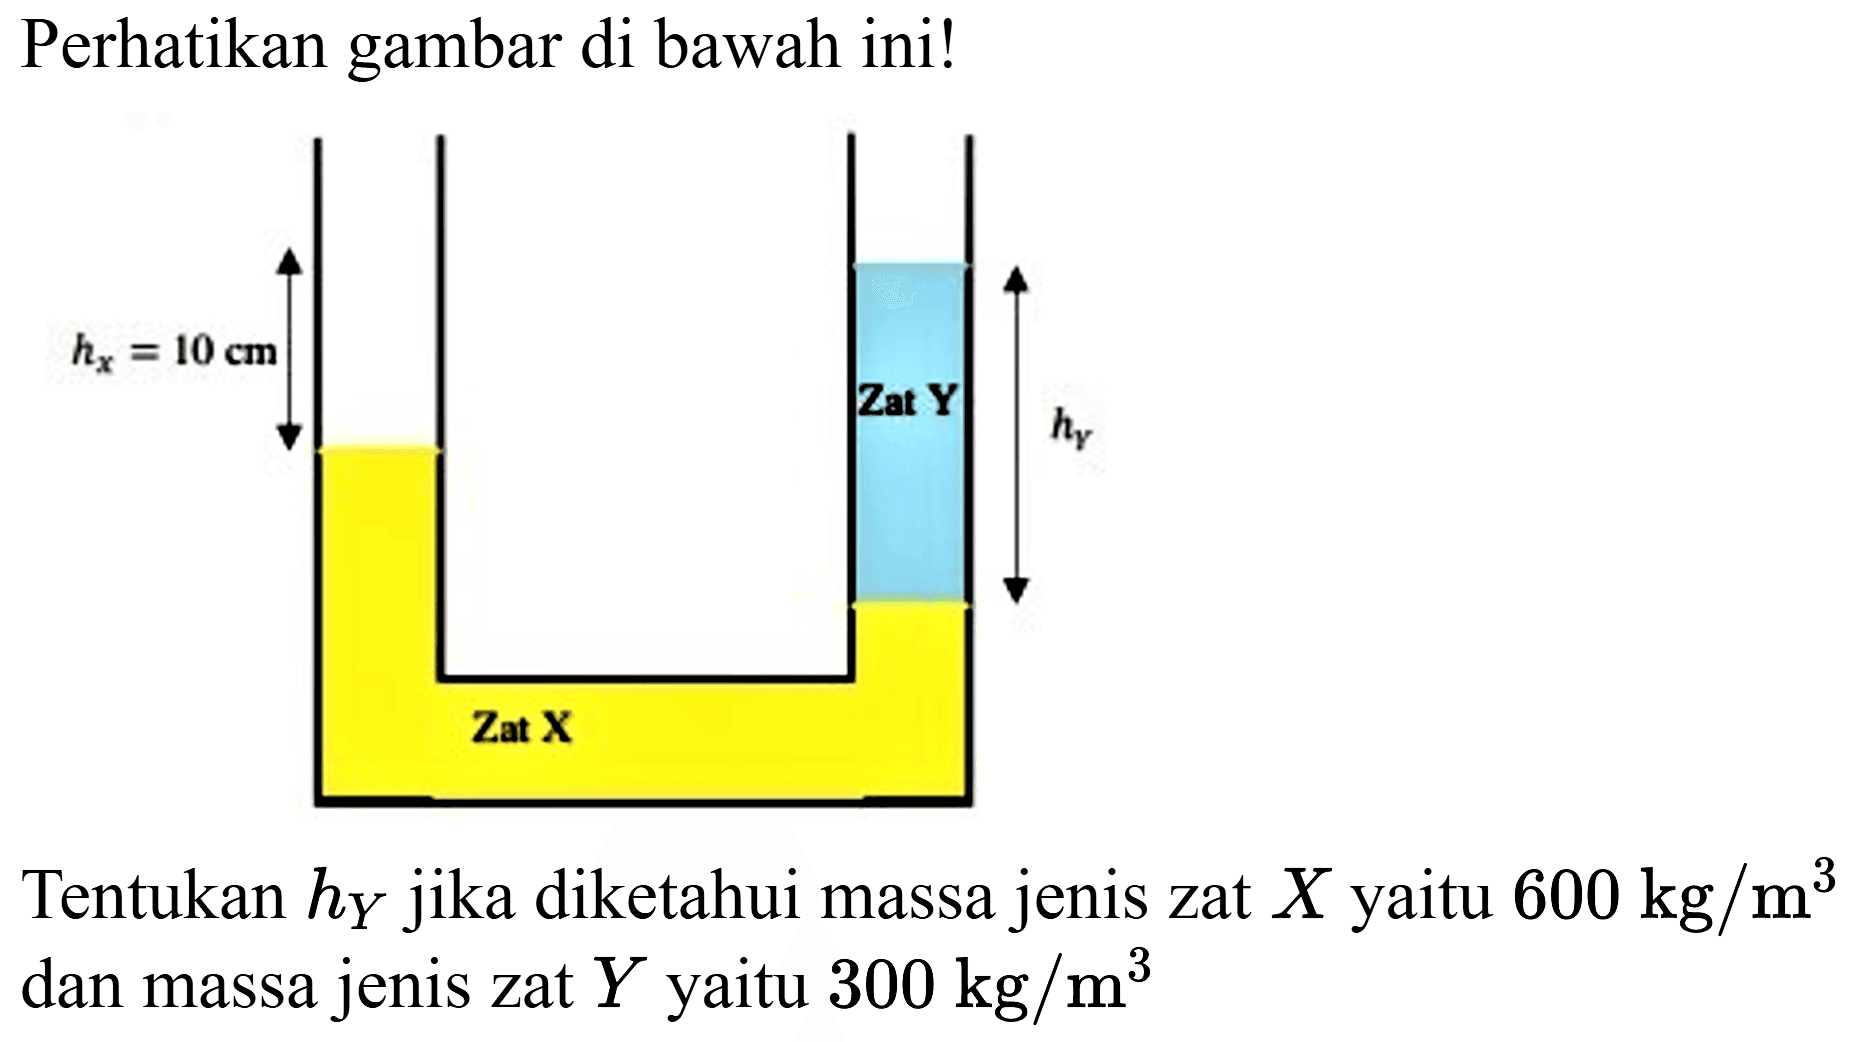 Perhatikan gambar di bawah ini!
Tentukan  h_(Y)  jika diketahui massa jenis zat  X  yaitu  600 kg / m^(3)  dan massa jenis zat  Y  yaitu  300 kg / m^(3) 